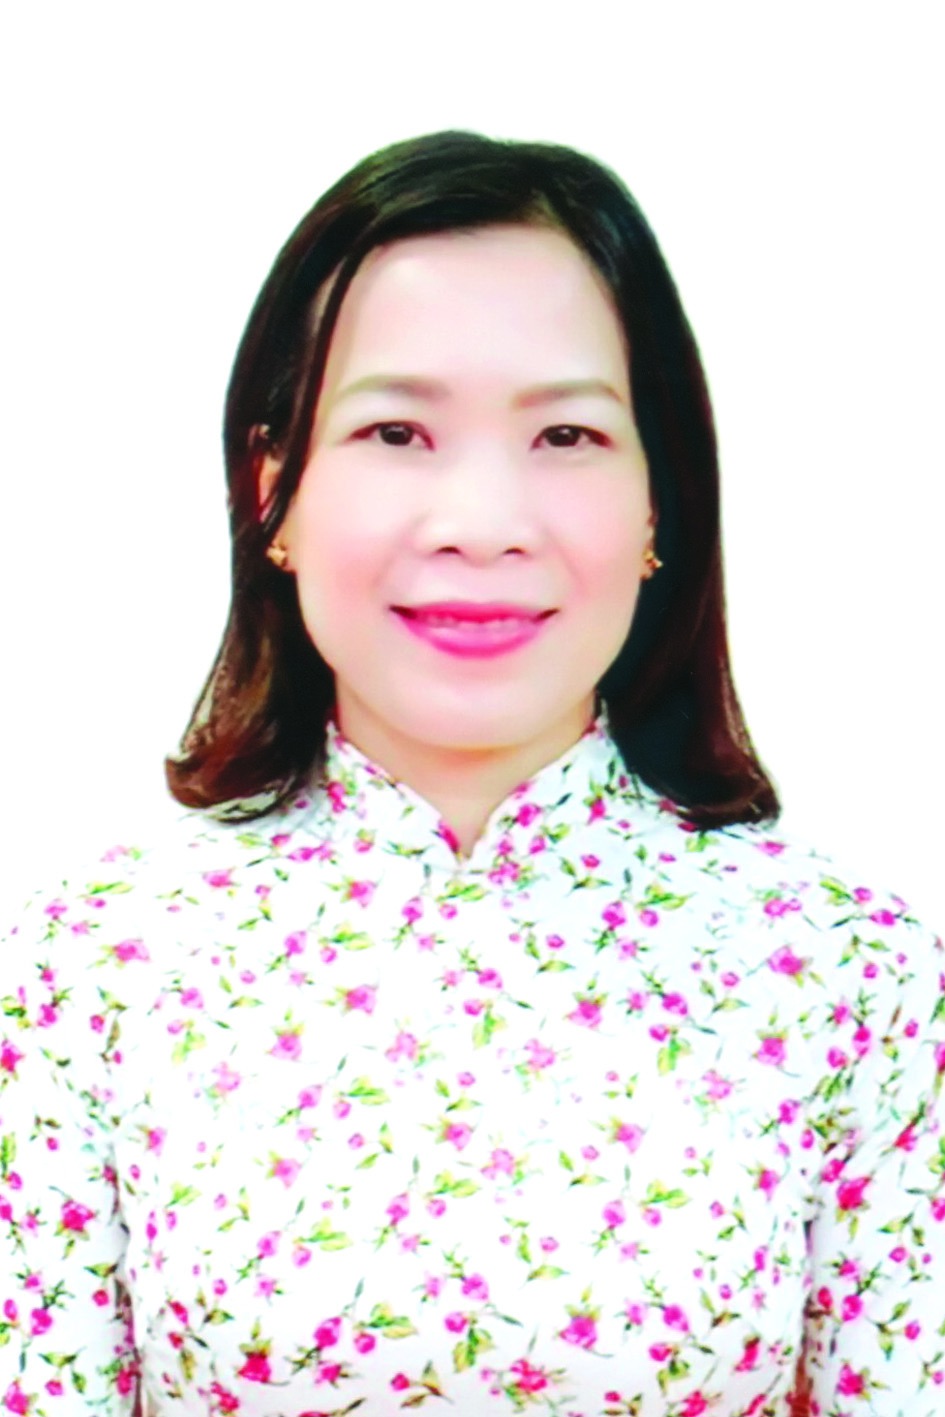 Chương trình hành động của bà Vũ Thị Thanh Tú, ứng cử viên đại biểu HĐND TP Hà Nội nhiệm kỳ 2021 - 2026 - Ảnh 1